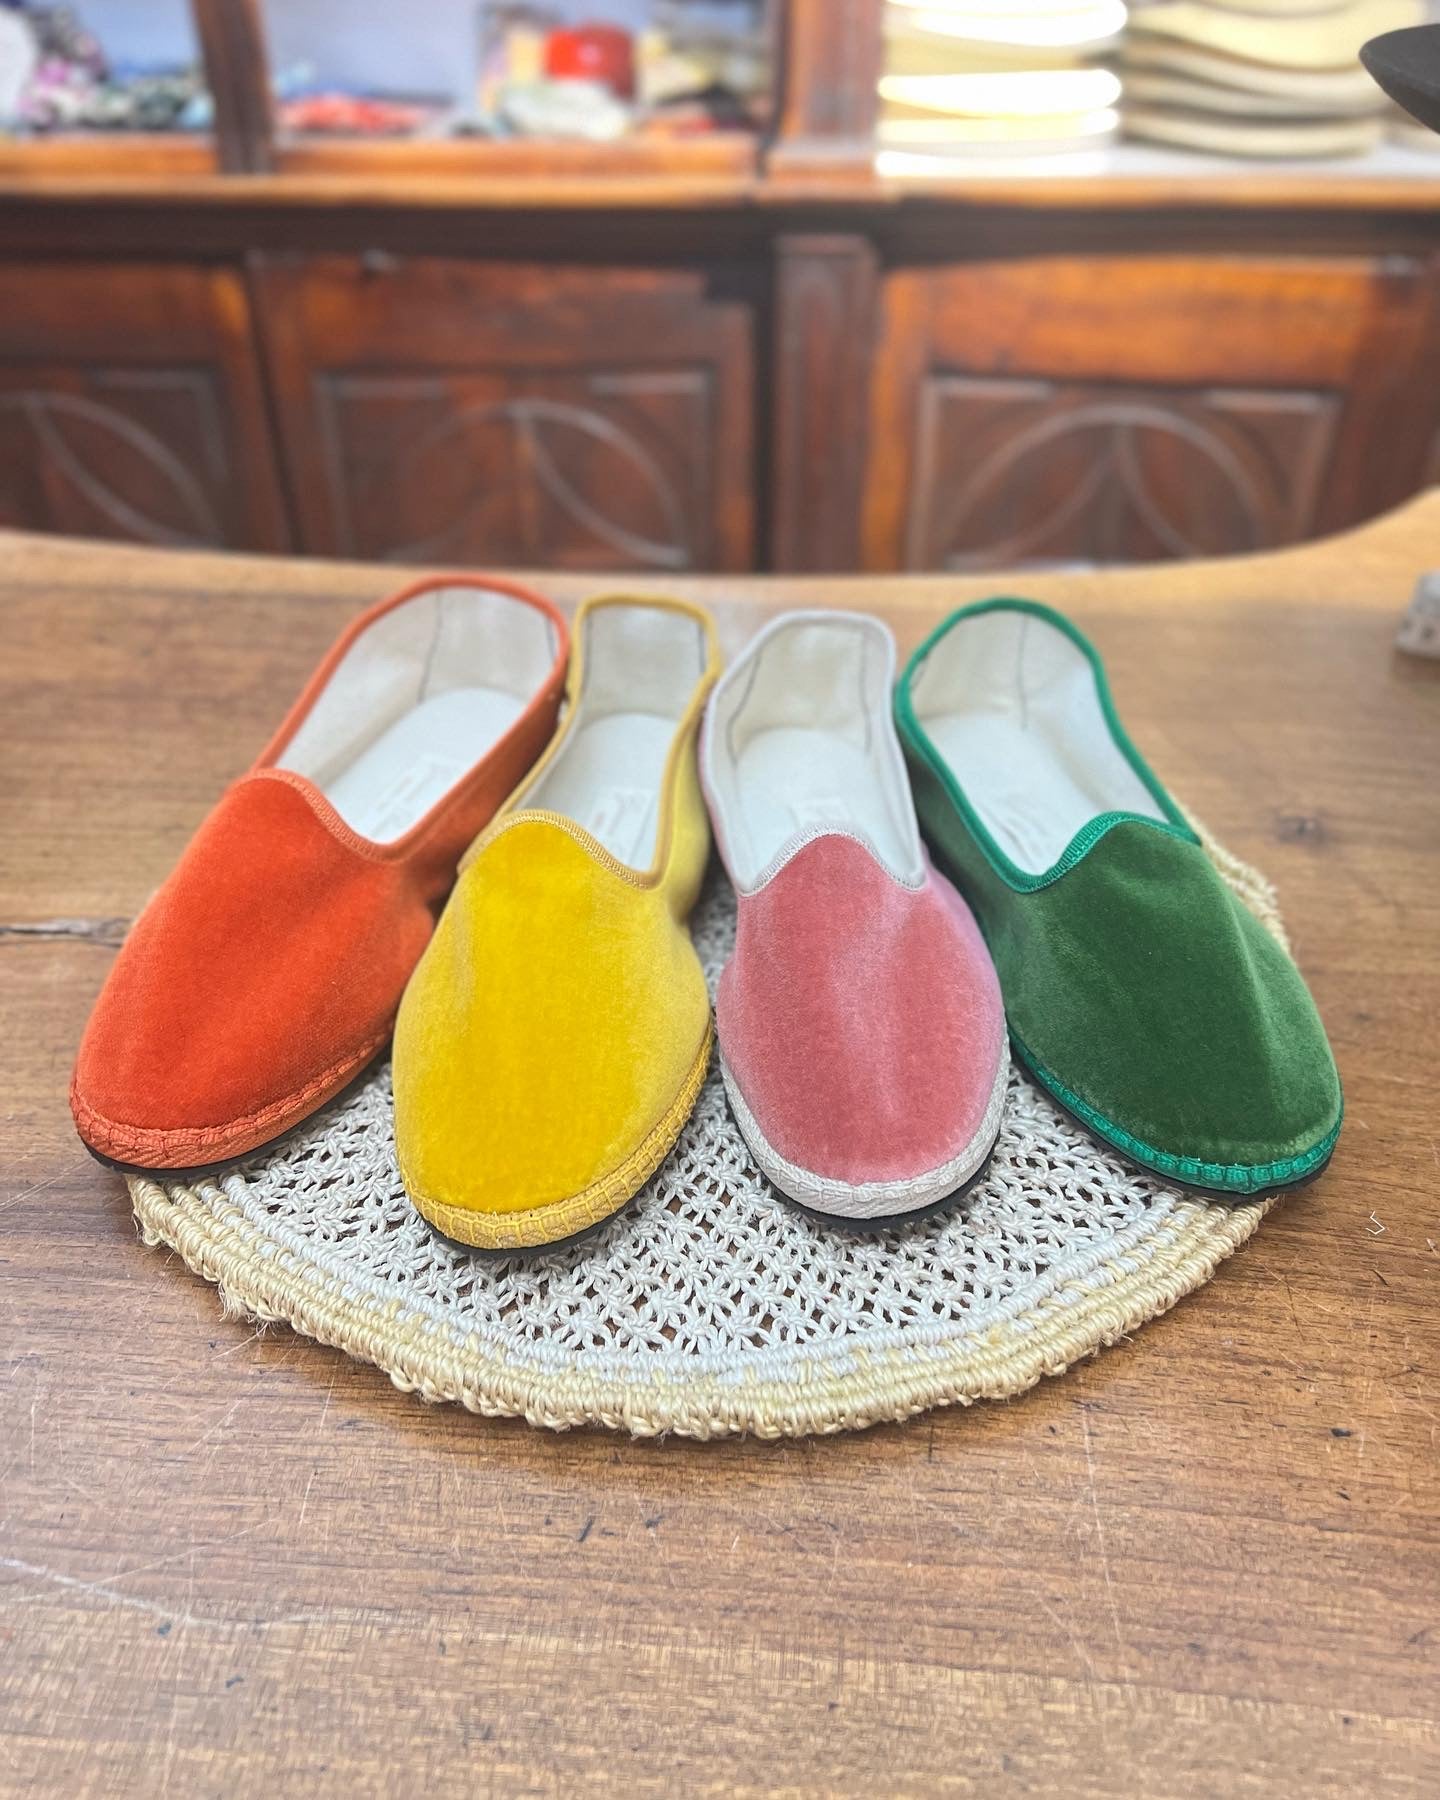 Scarpe friulane disposte a raggiera nei colori arancione, giallo, rosa e verde smeraldo